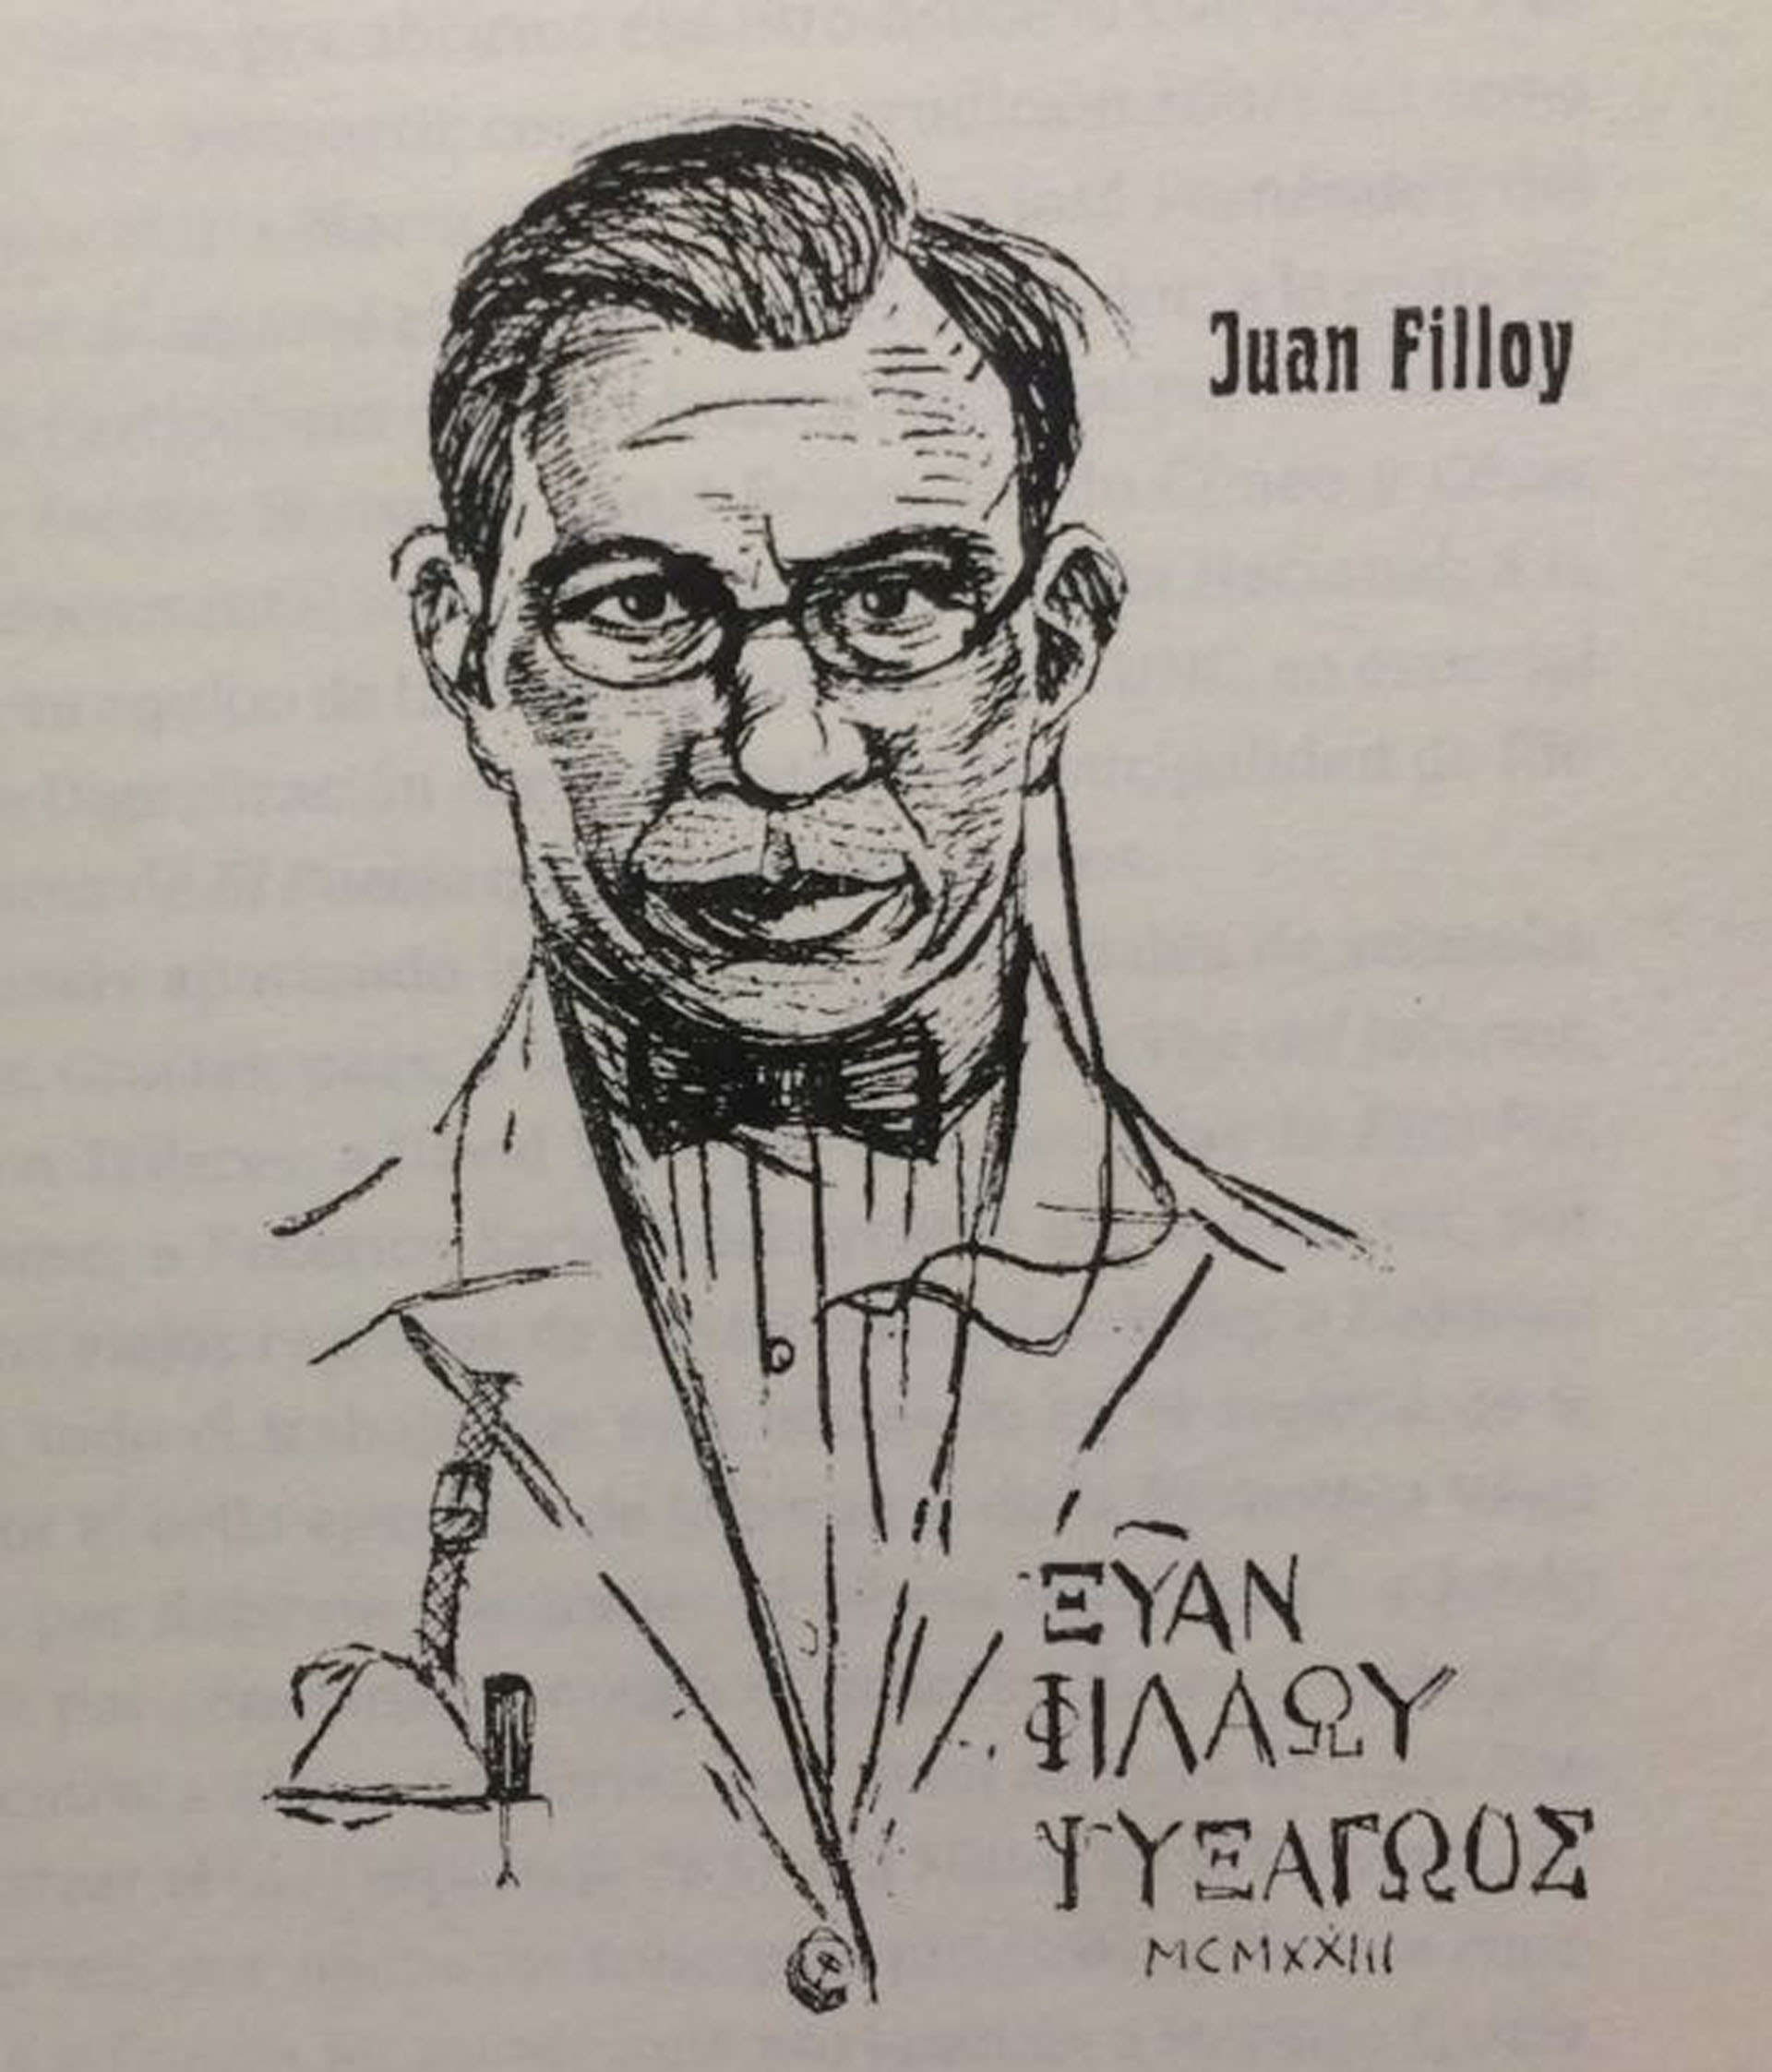 Autoretrato de Juan Filloy, año 1923 (incluido en el libro "Un atleta de las letras")